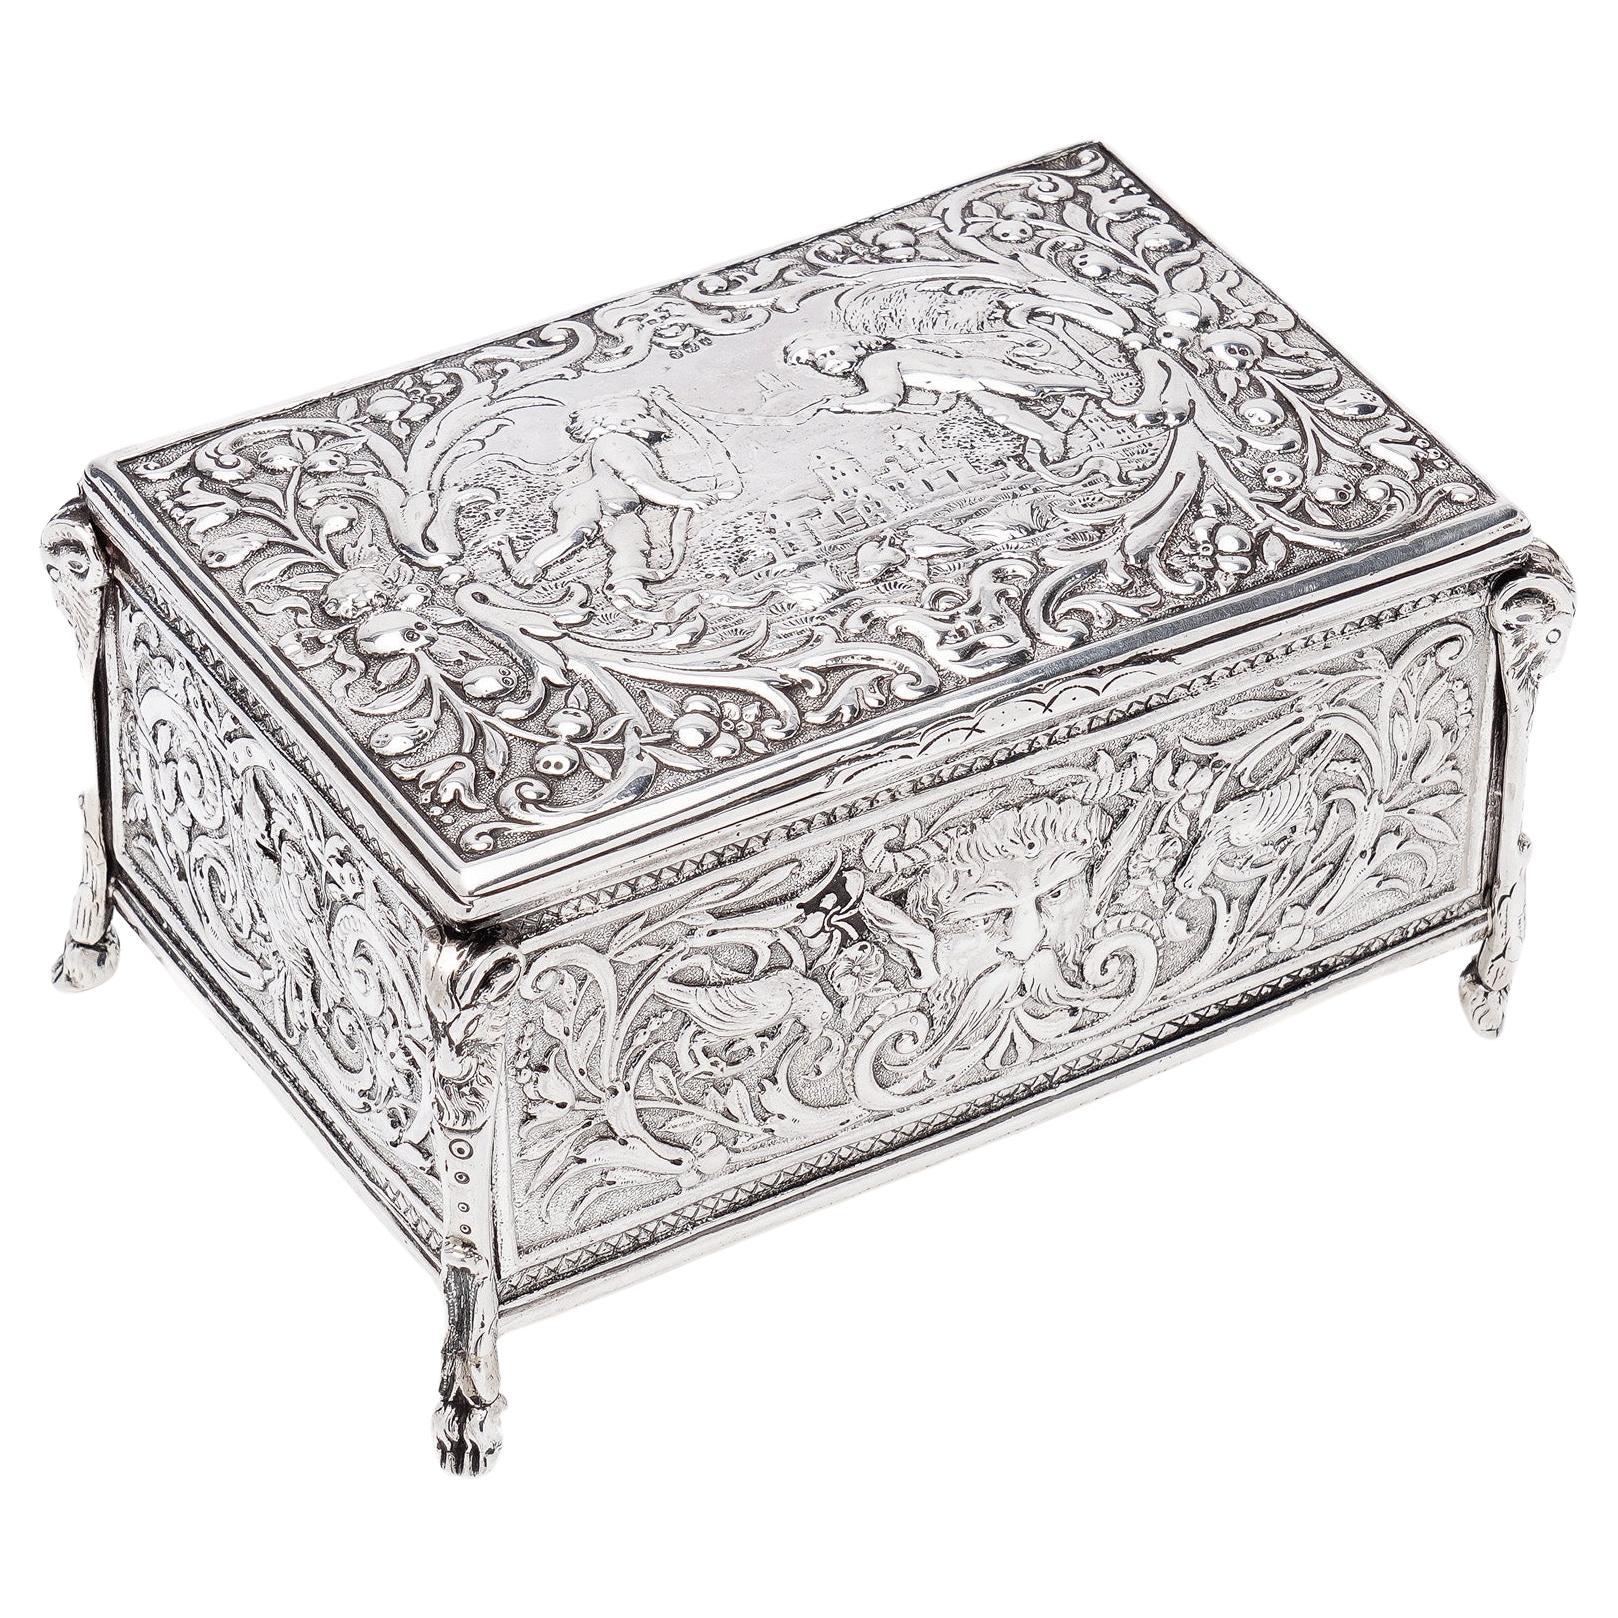 Antiquité de la fin du 19e siècle, boîte à bijoux en argent repoussé décorée de chérubins